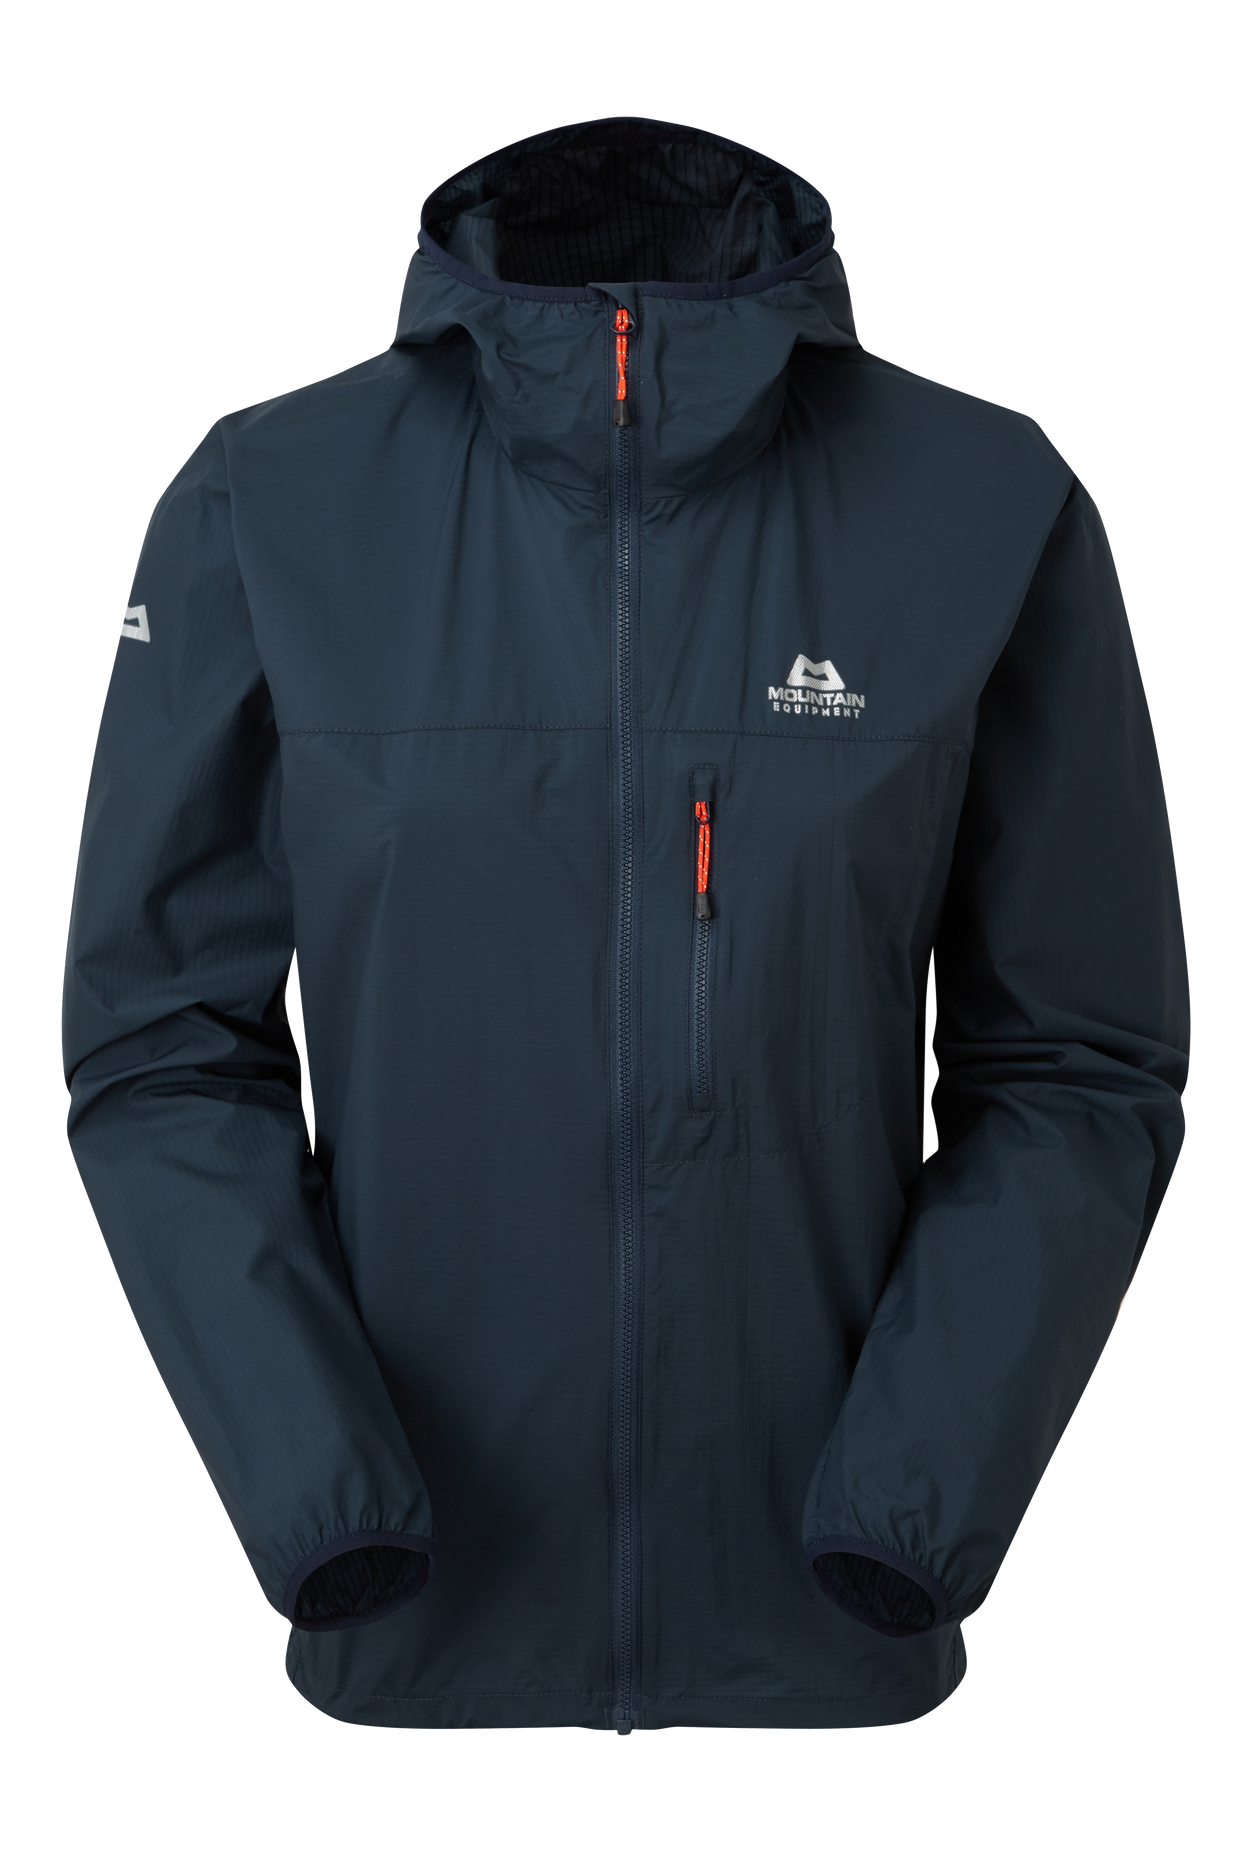 Mountain equipment dámská větruodolná bunda Aerofoil Full zip Wmns Jacket Barva: Blue Nights, Velikost: S